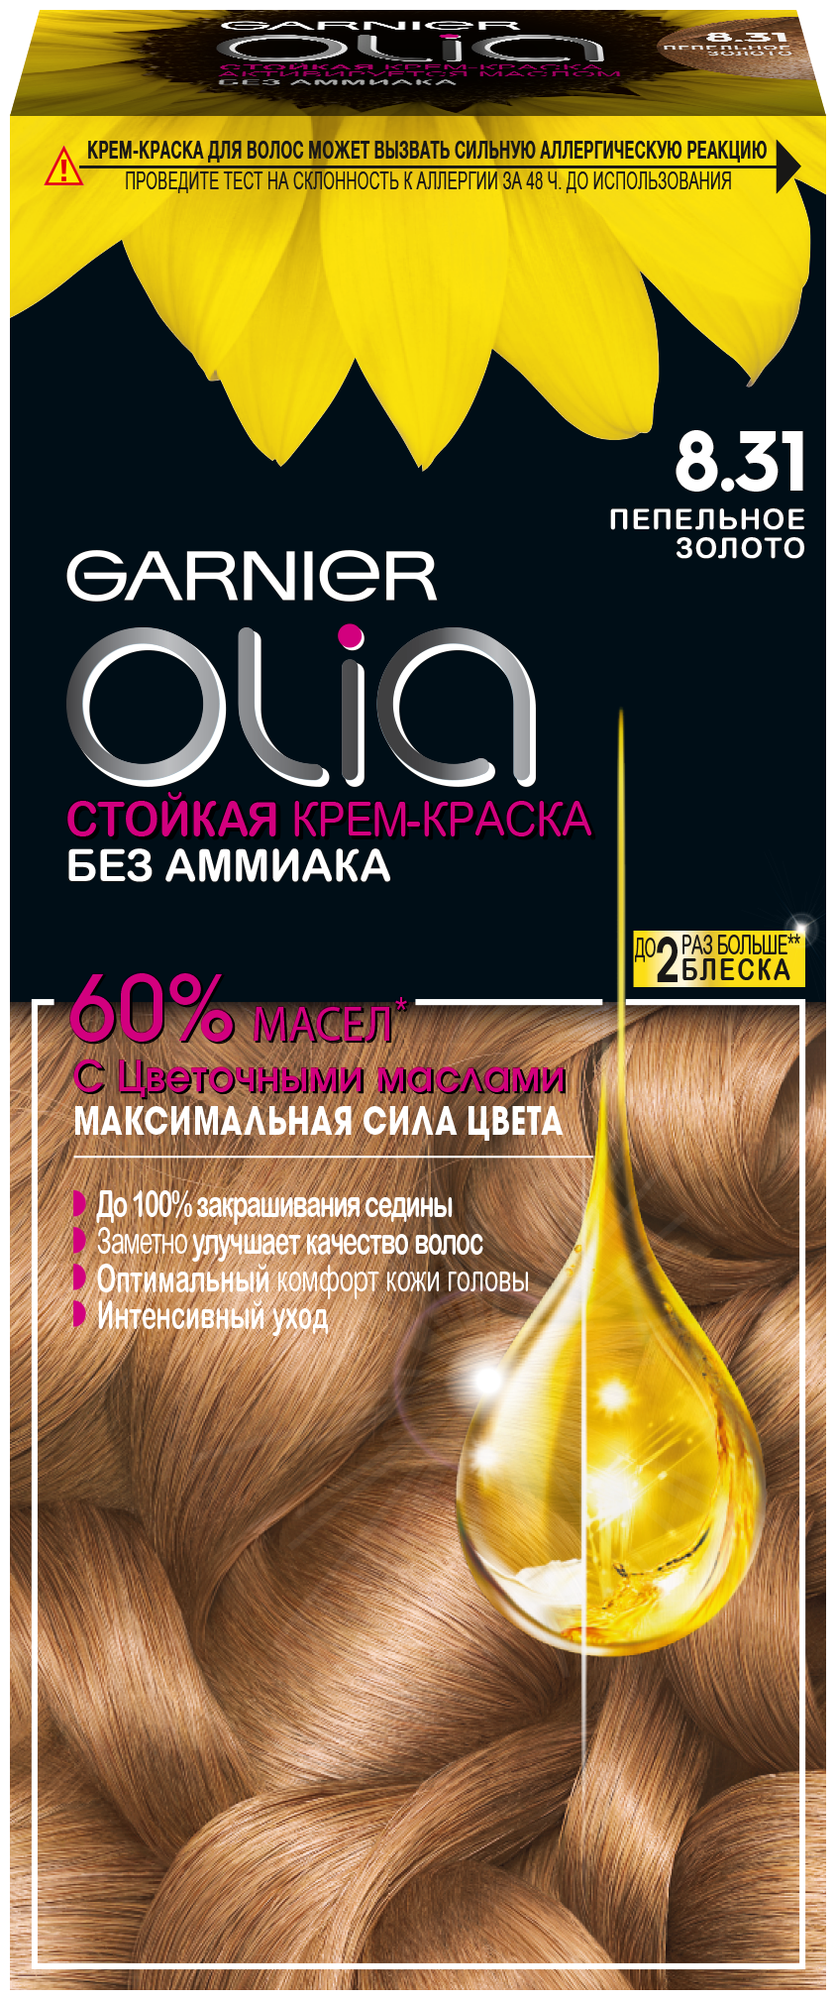 GARNIER Olia стойкая крем-краска для волос, 8.31 пепельное золото, 112 мл